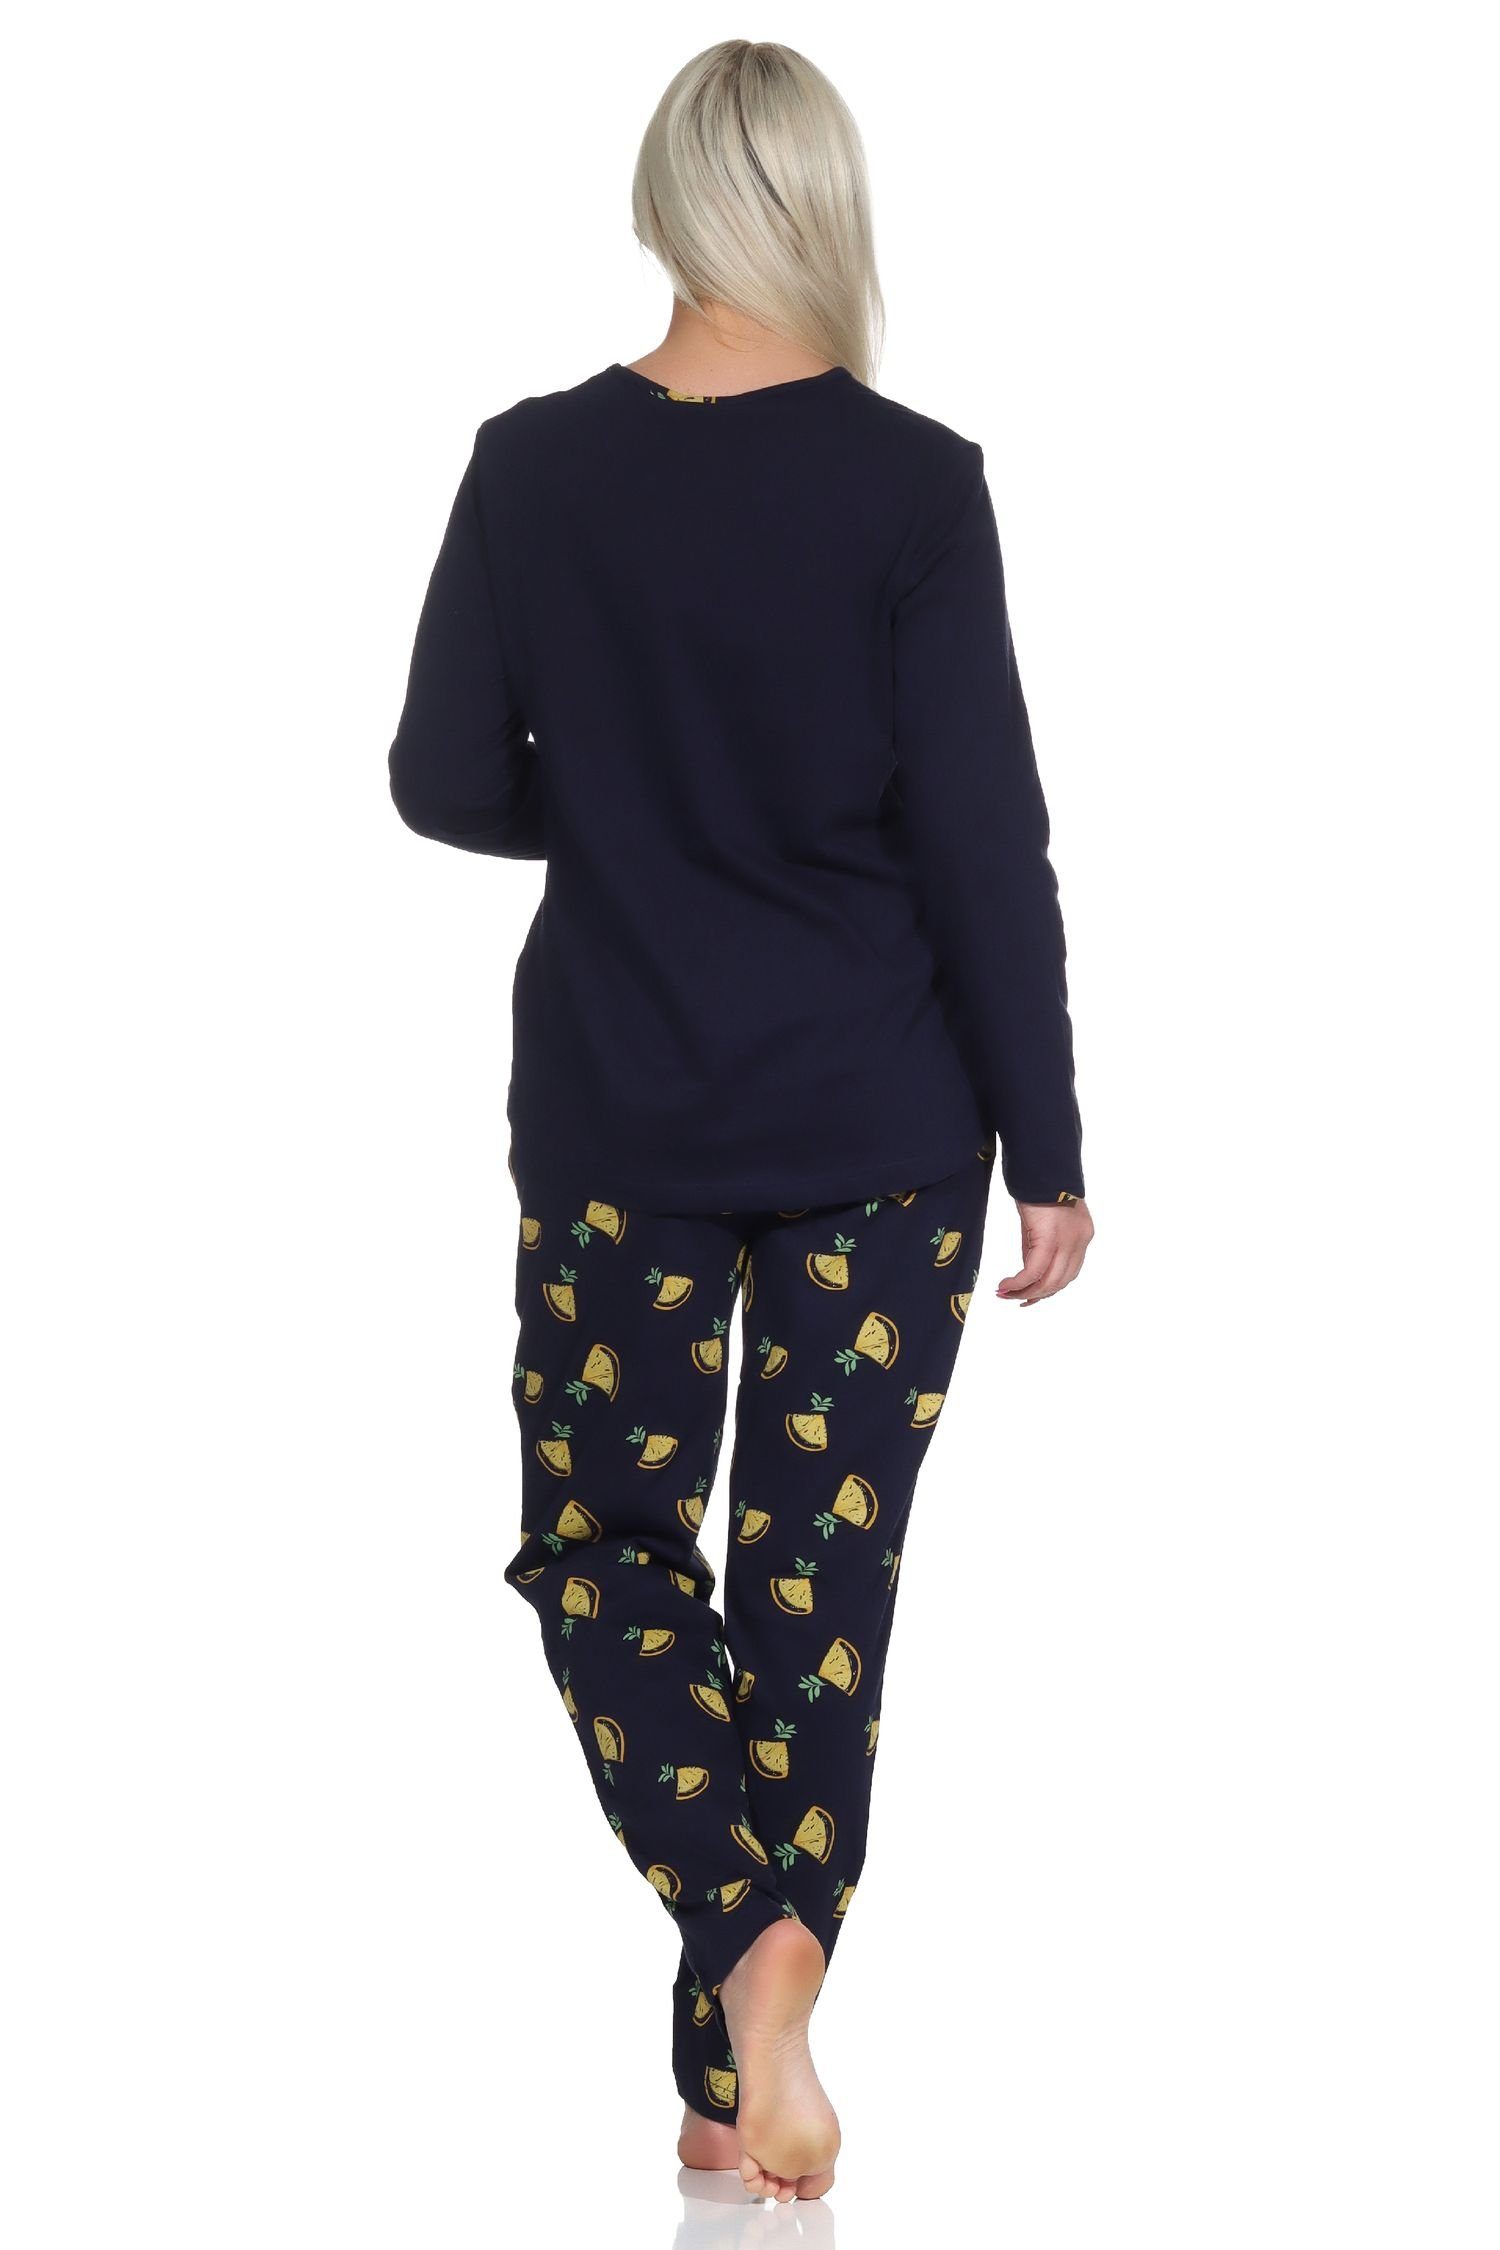 Damen Süsser mit Pyjama Schlafanzug Motiv Normann Pyjama Zitronen marine als langarm